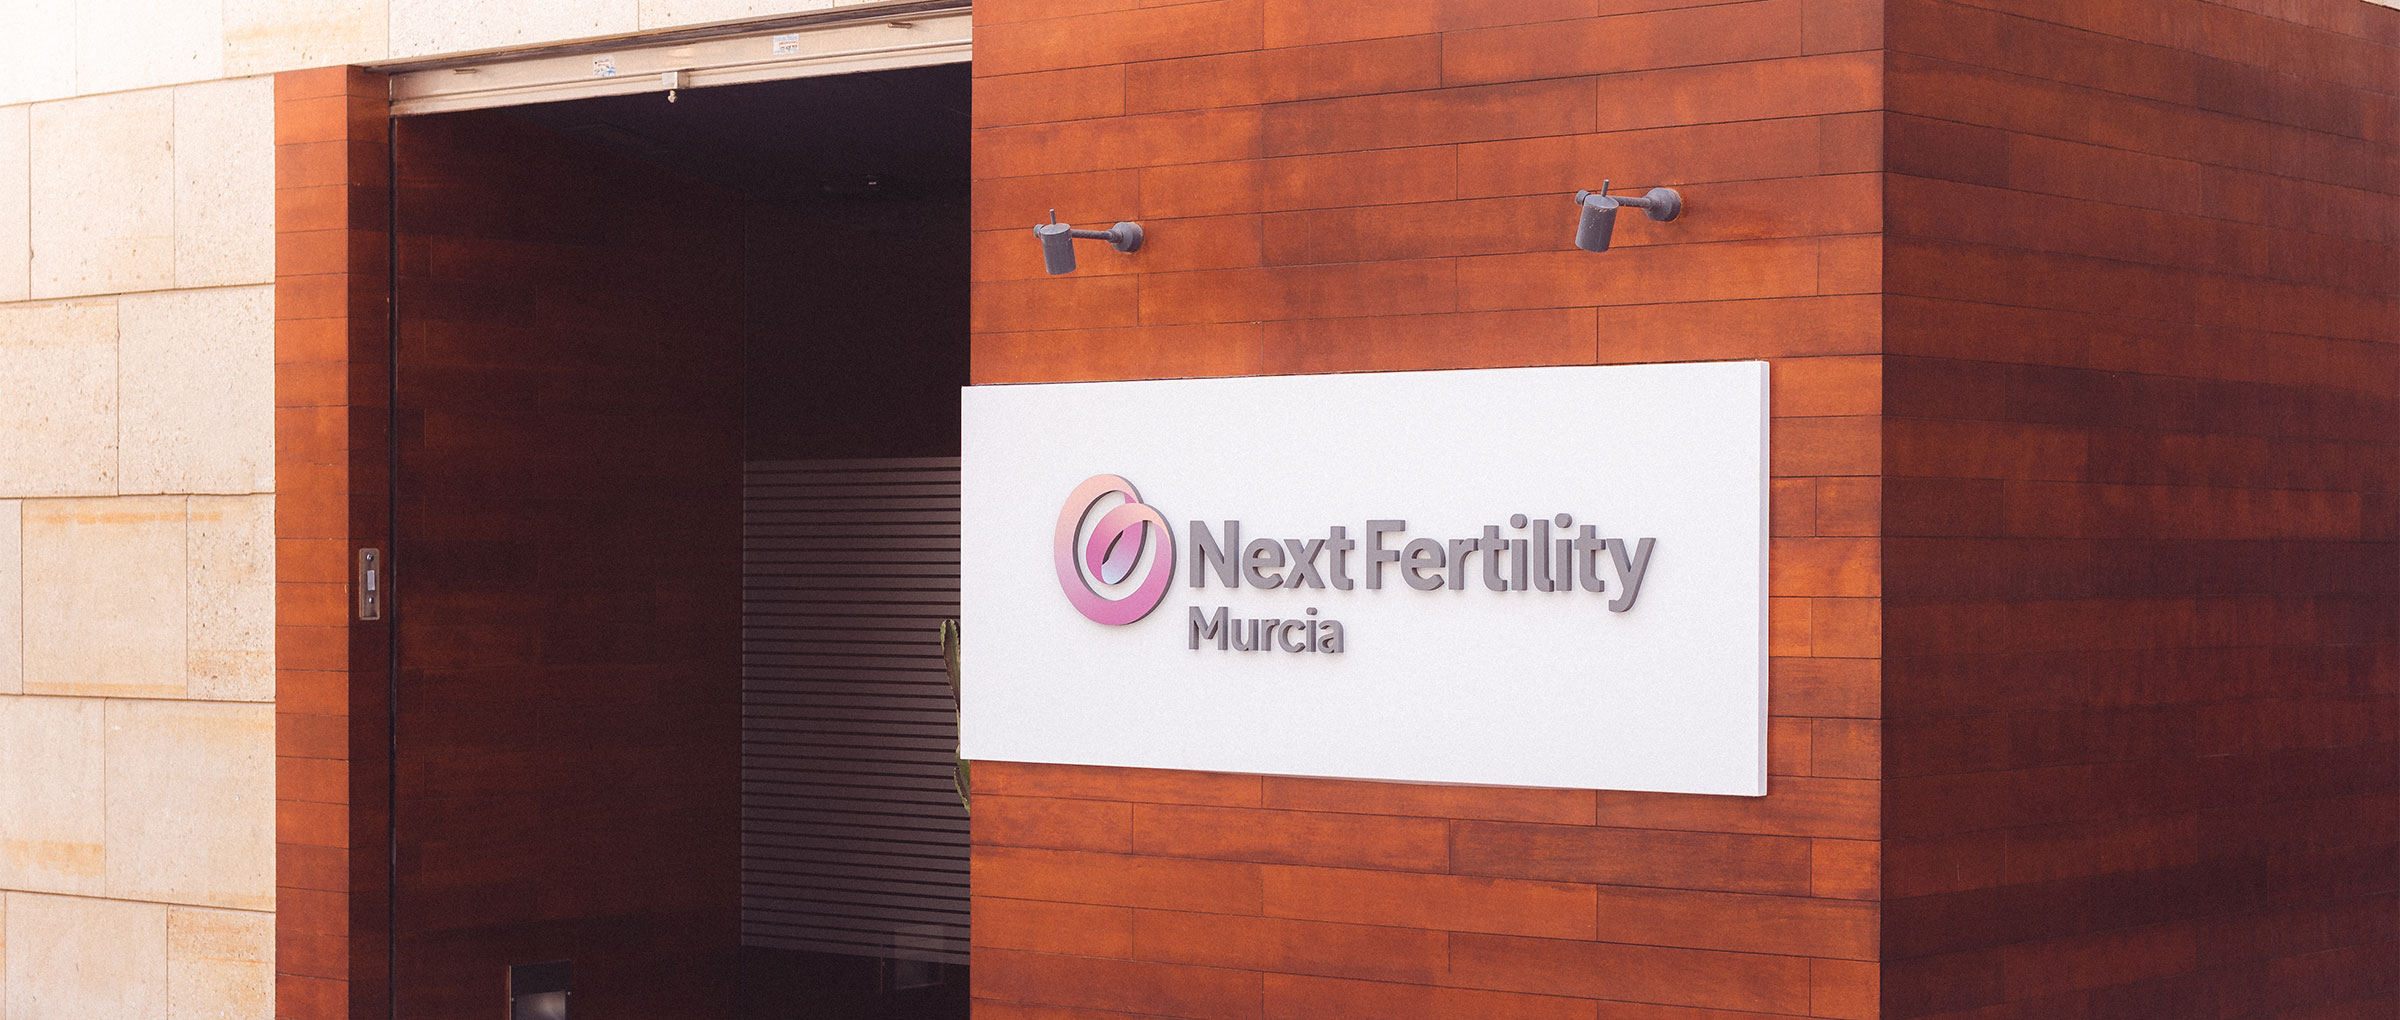 Äußere Fassade von Next Fertility Murcia